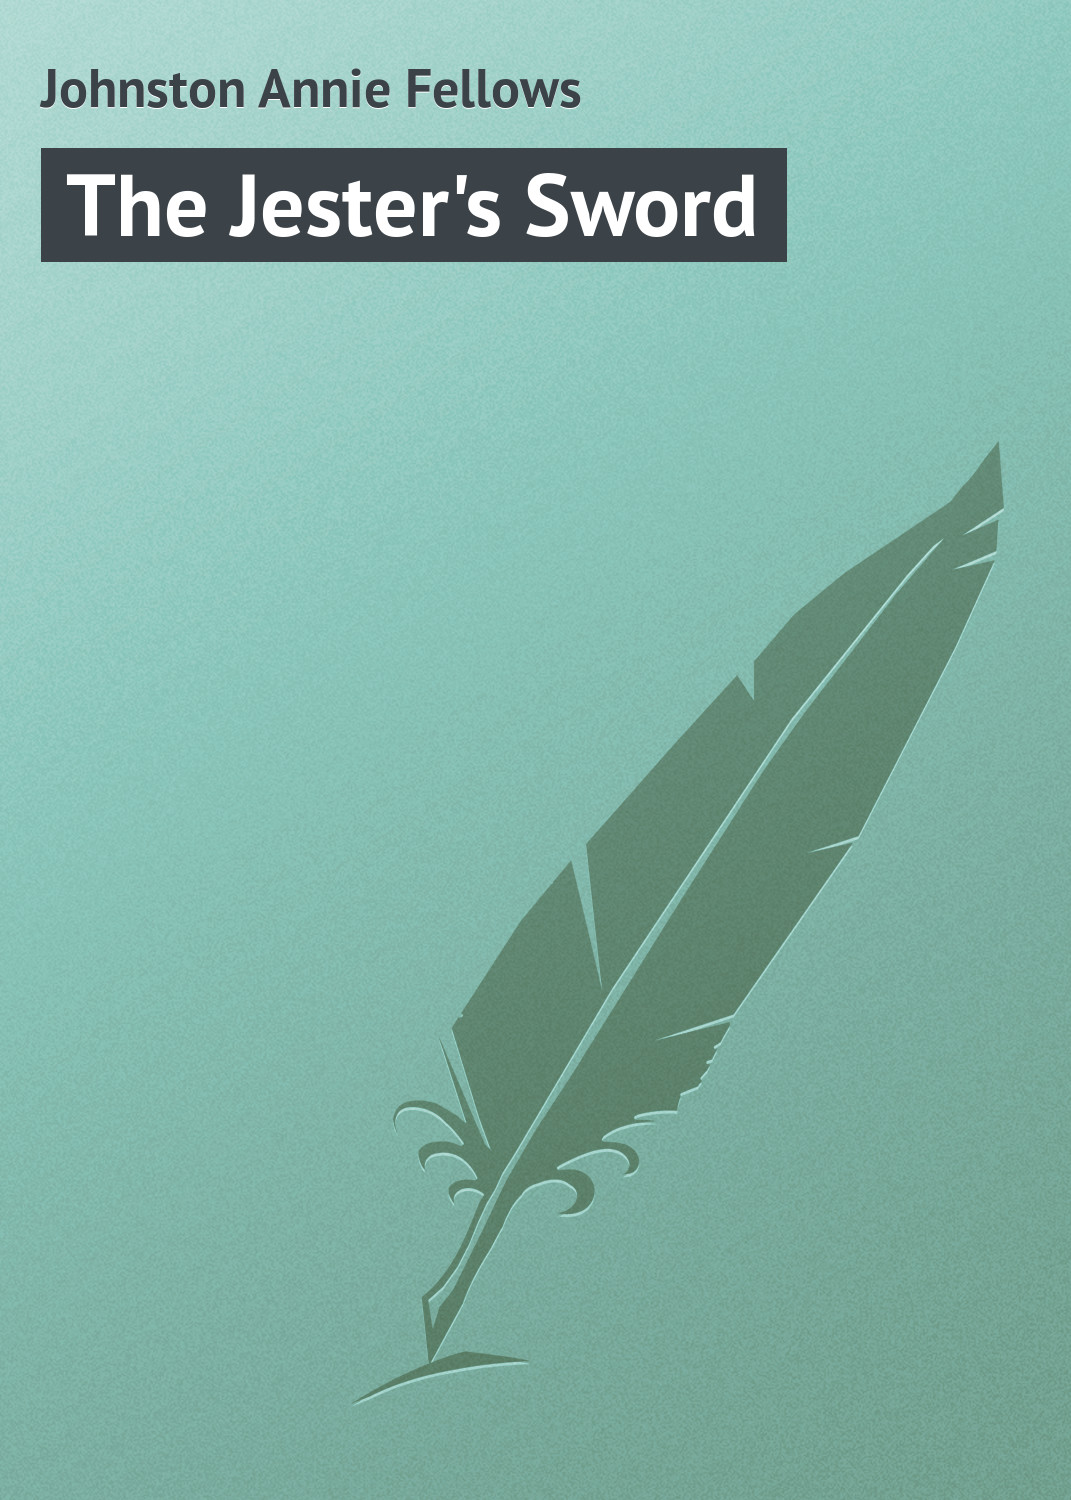 Книга The Jester's Sword из серии , созданная Annie Johnston, может относится к жанру Зарубежная классика, Иностранные языки. Стоимость электронной книги The Jester's Sword с идентификатором 23163235 составляет 5.99 руб.